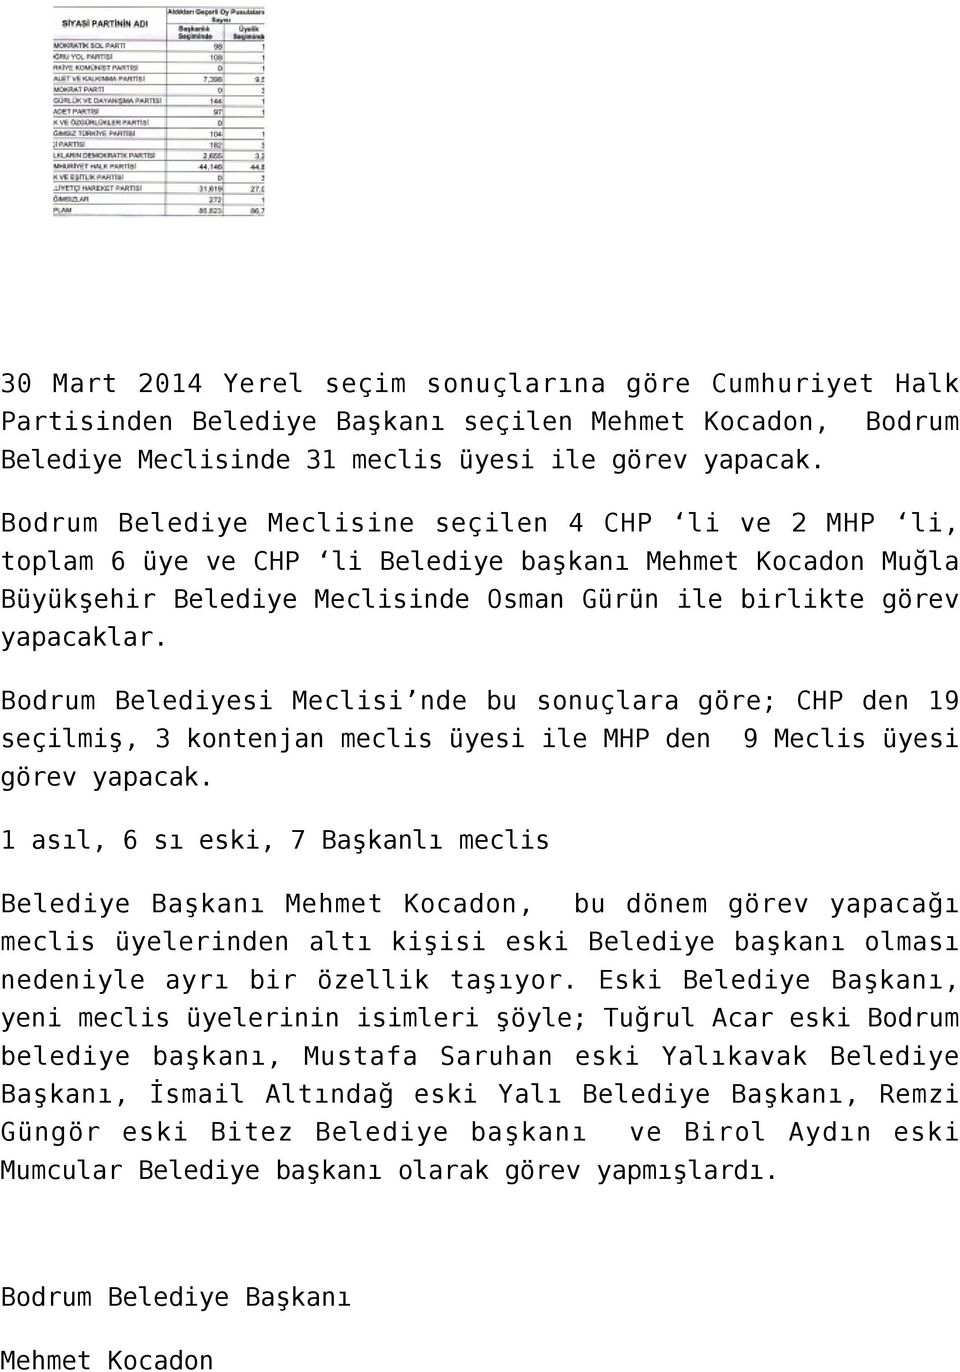 Bodrum Belediyesi Meclisi nde bu sonuçlara göre; CHP den 19 seçilmiş, 3 kontenjan meclis üyesi ile MHP den 9 Meclis üyesi görev yapacak.